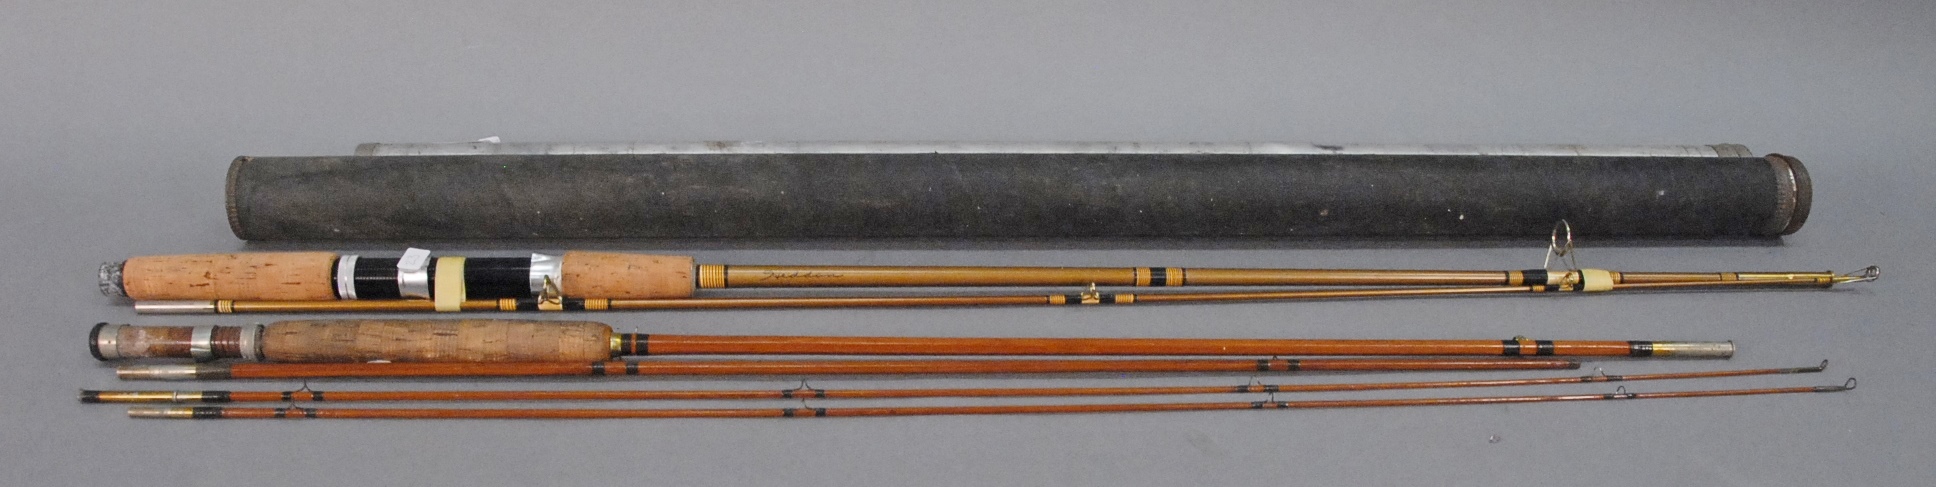 Lot 23: Two Heddon Rods including vintage Heddon #10 bamboo fly